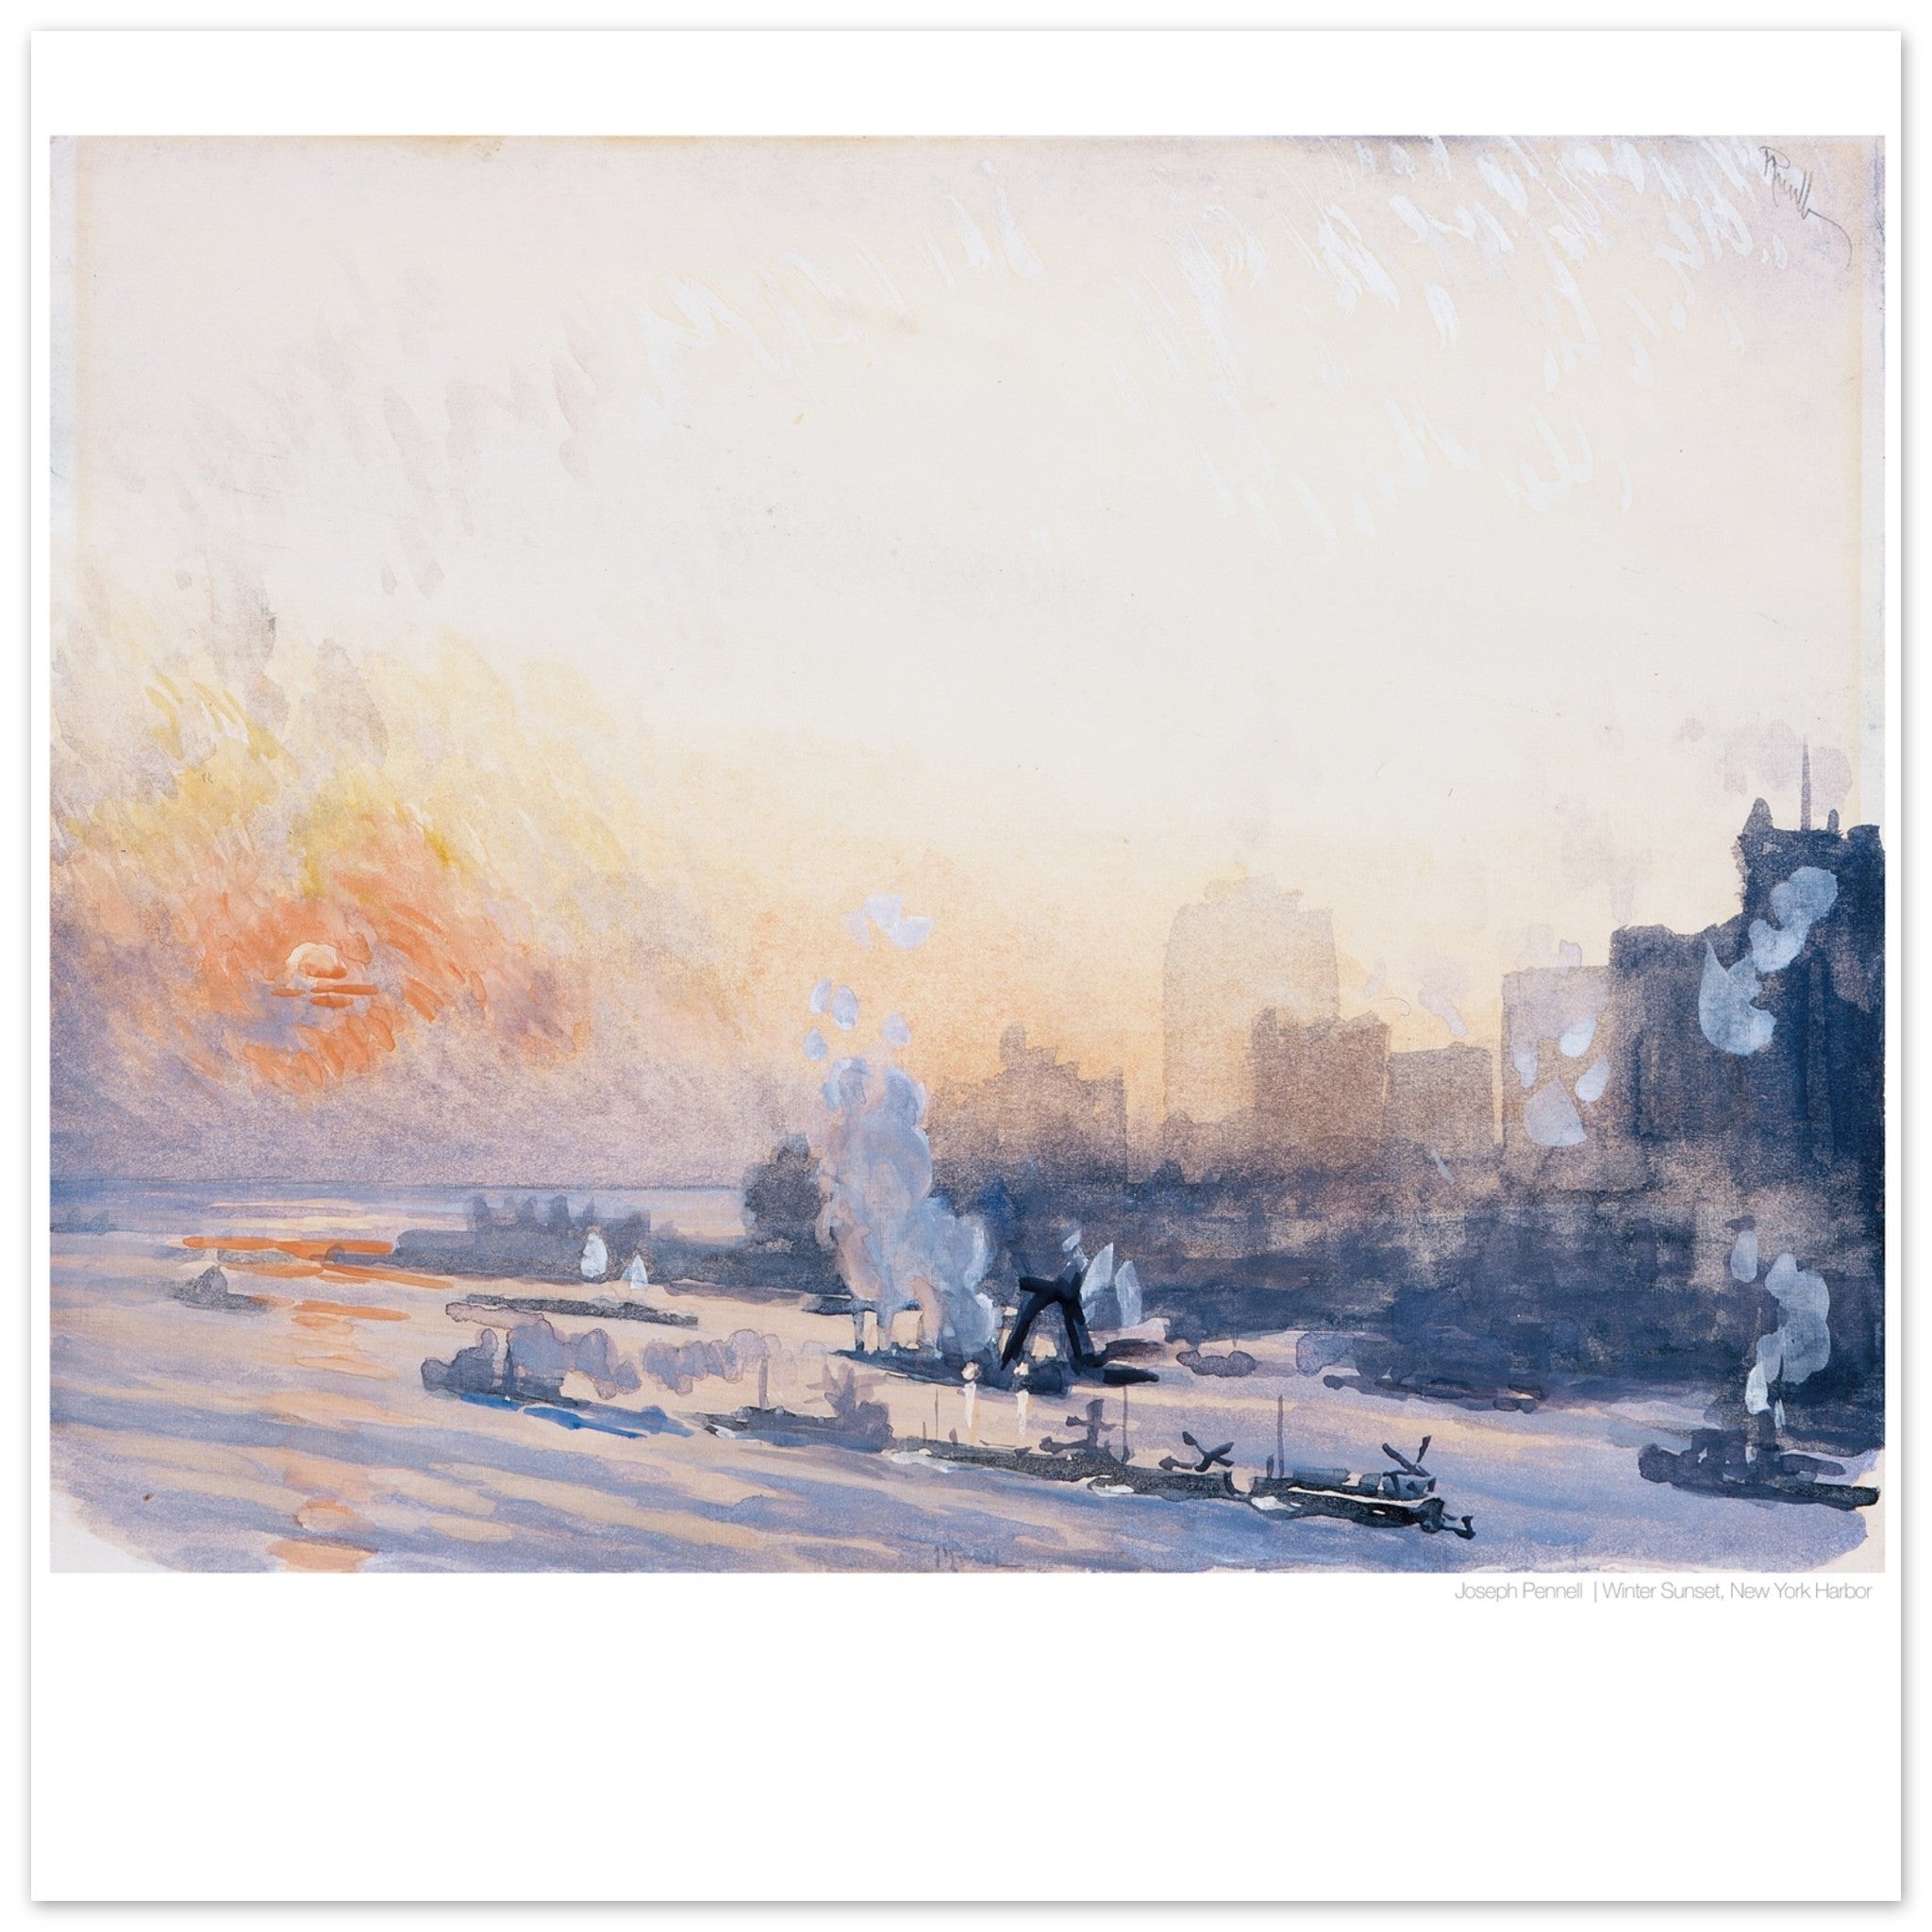 Joseph Pennell Poster - Winter Sunset, New York Harbor